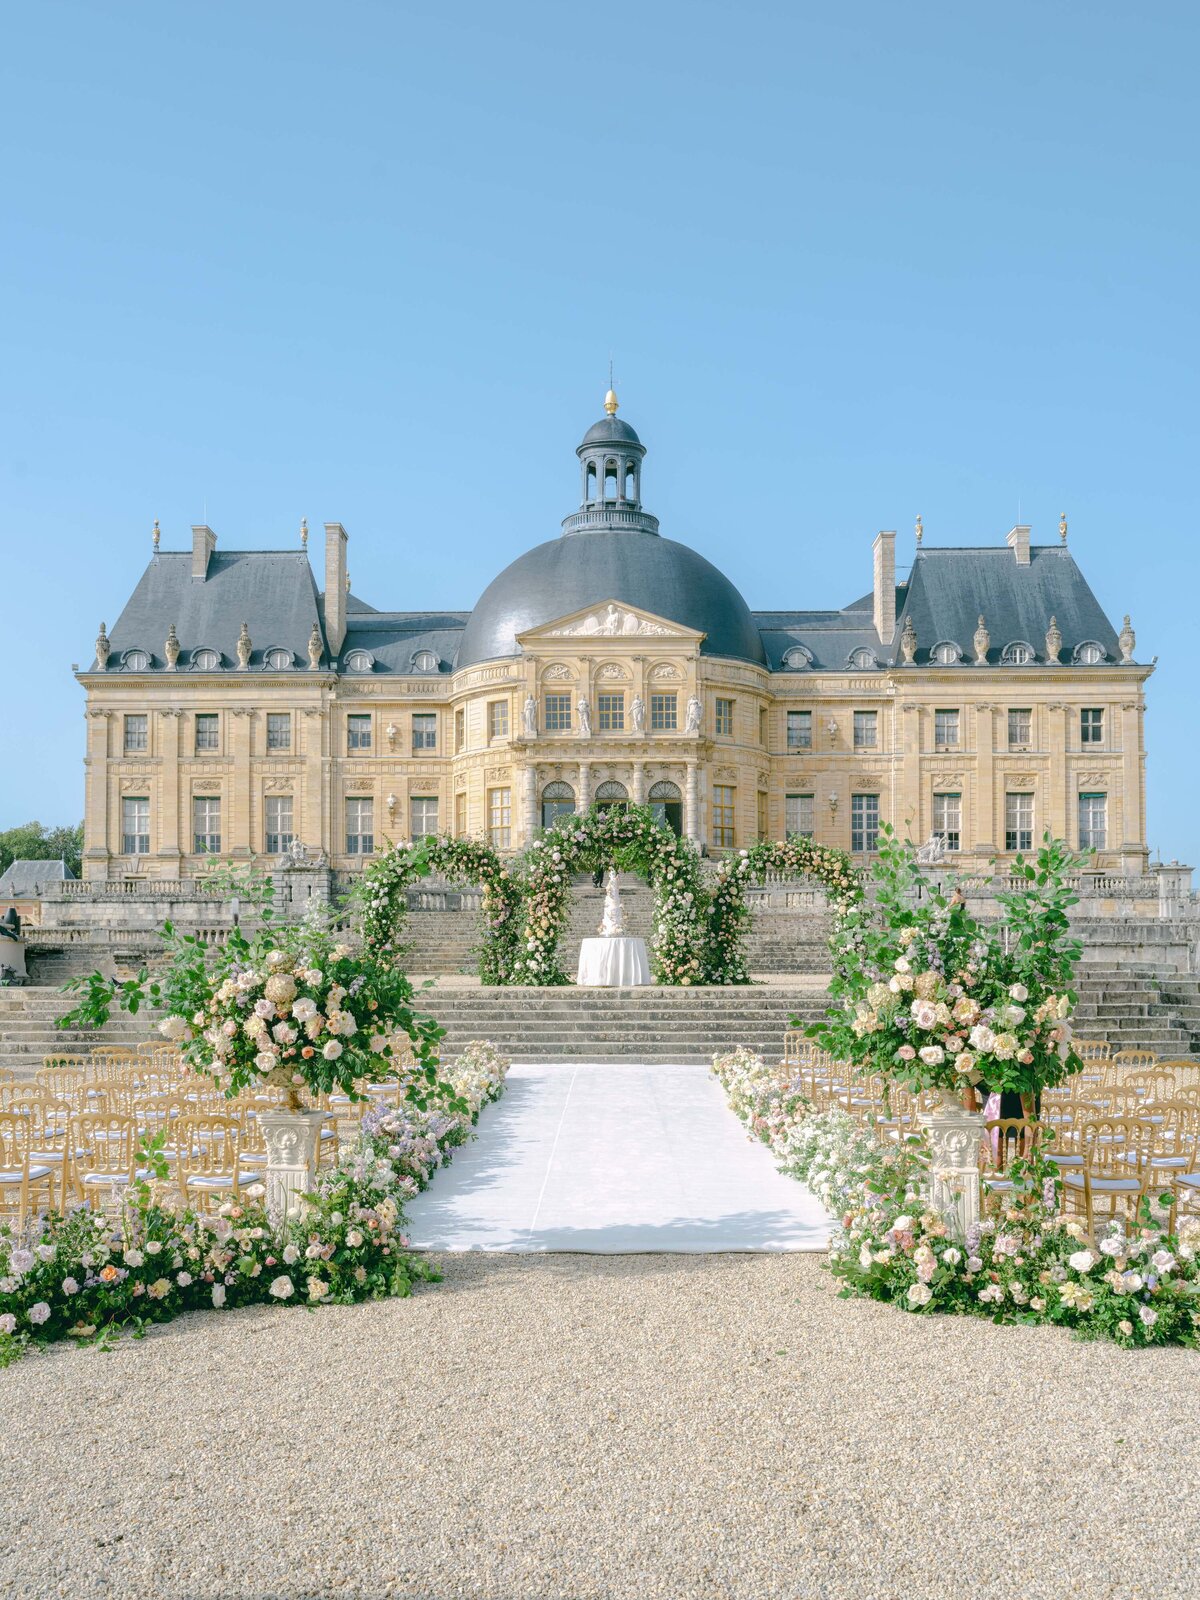 Chateau-Vaux-le-vicomte-wedding-florist-FLORAISON7